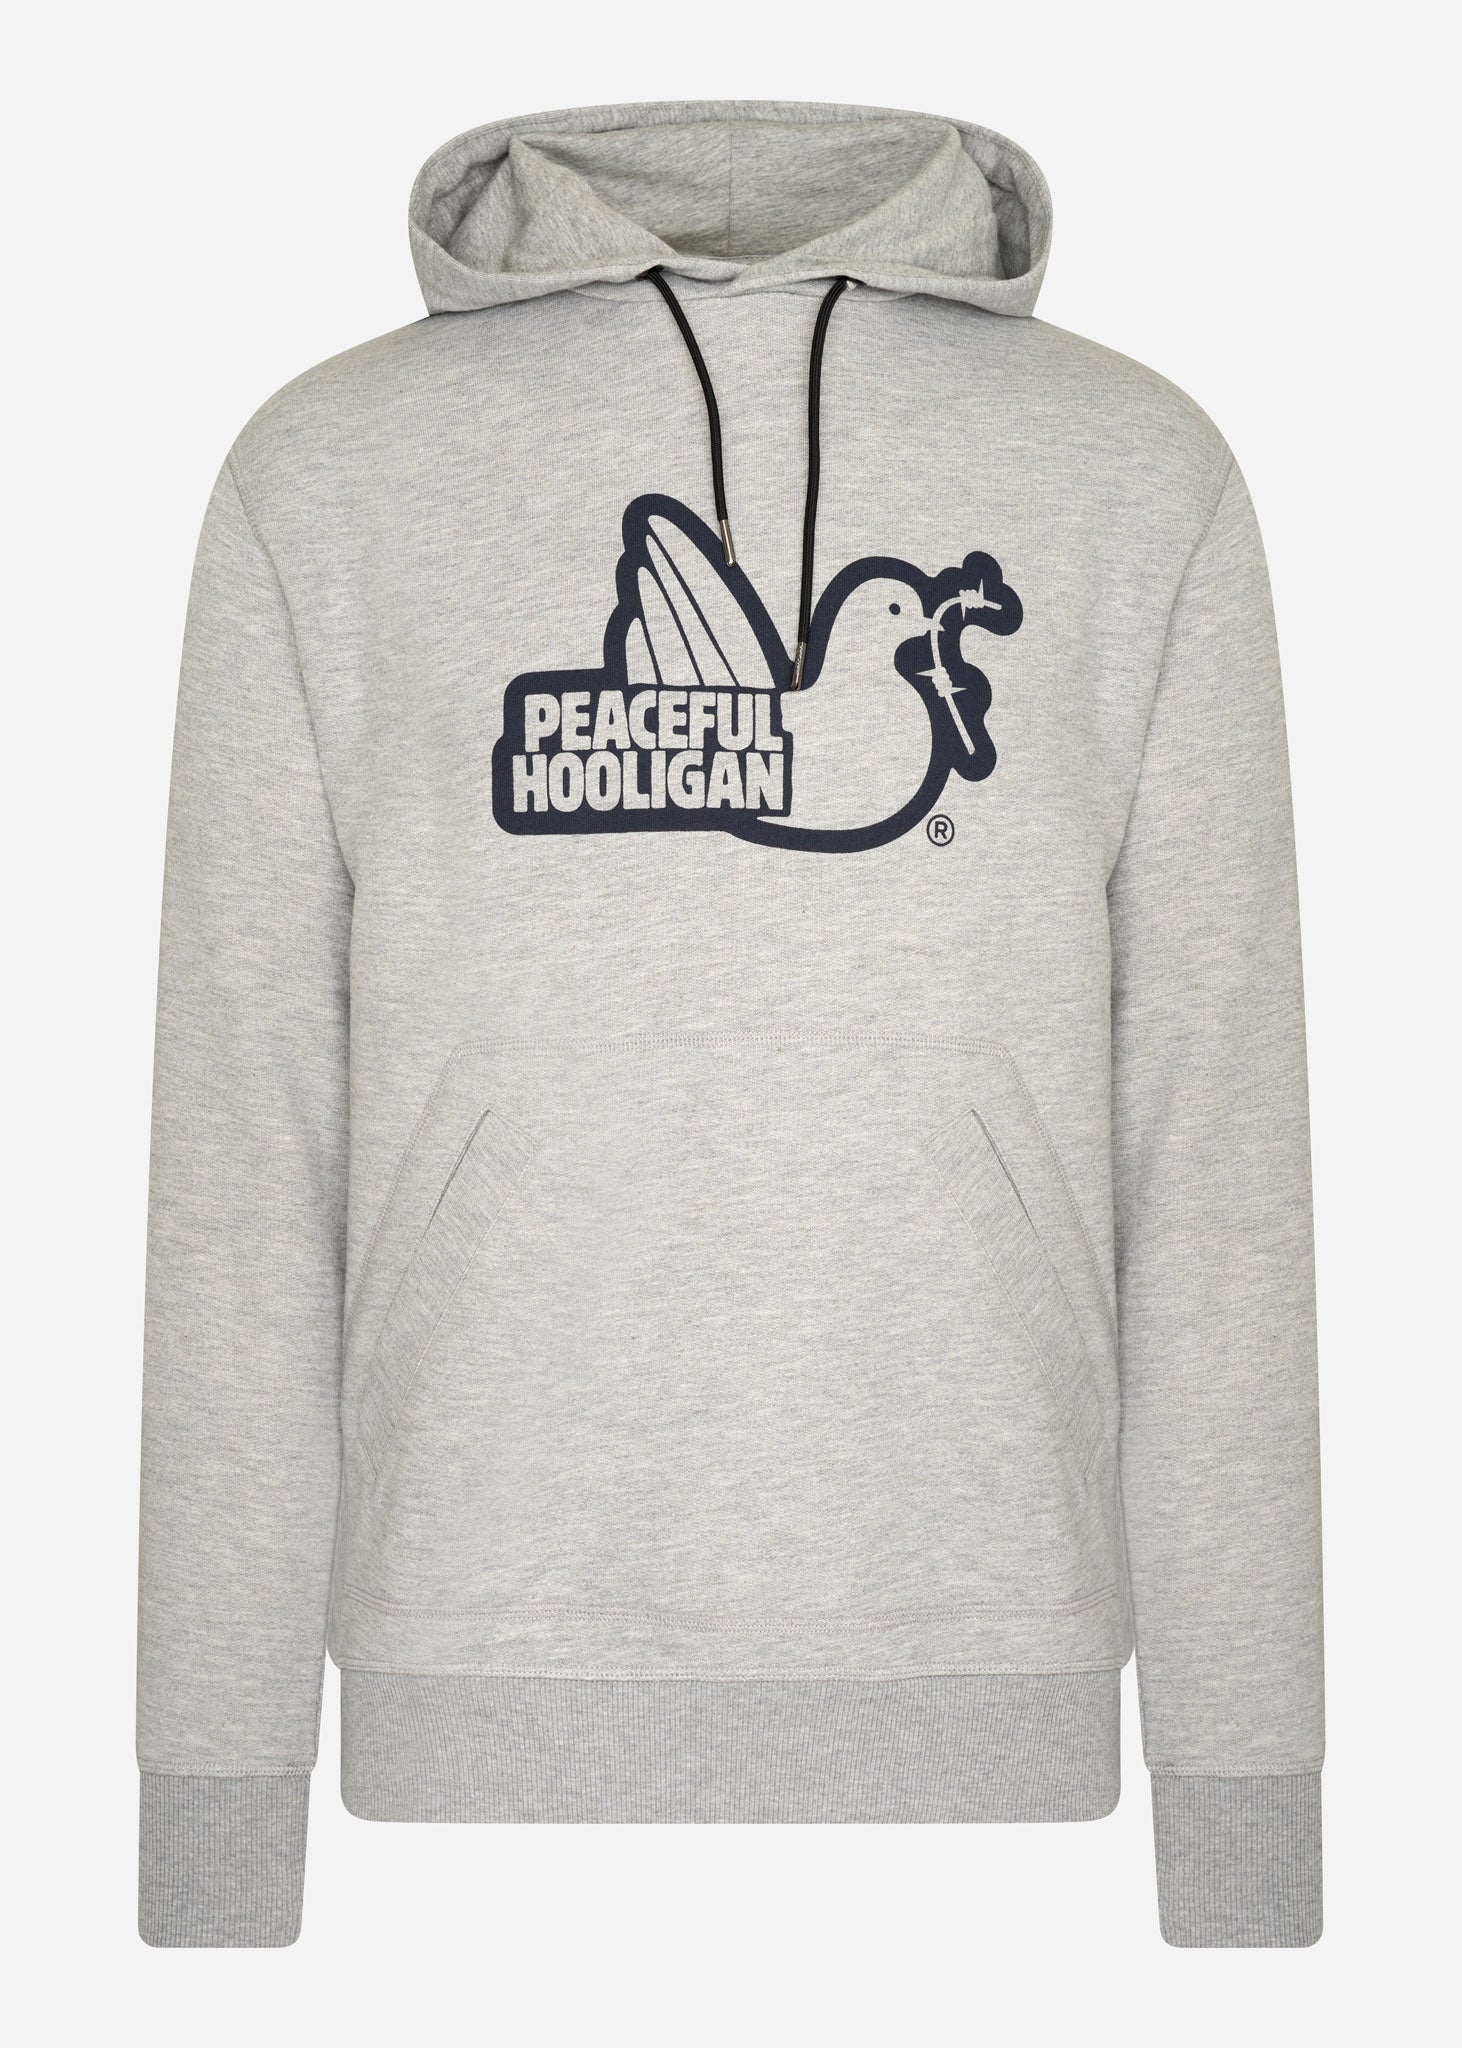 Peaceful Hooligan Hoodies  Outline hoodie - marl grey 